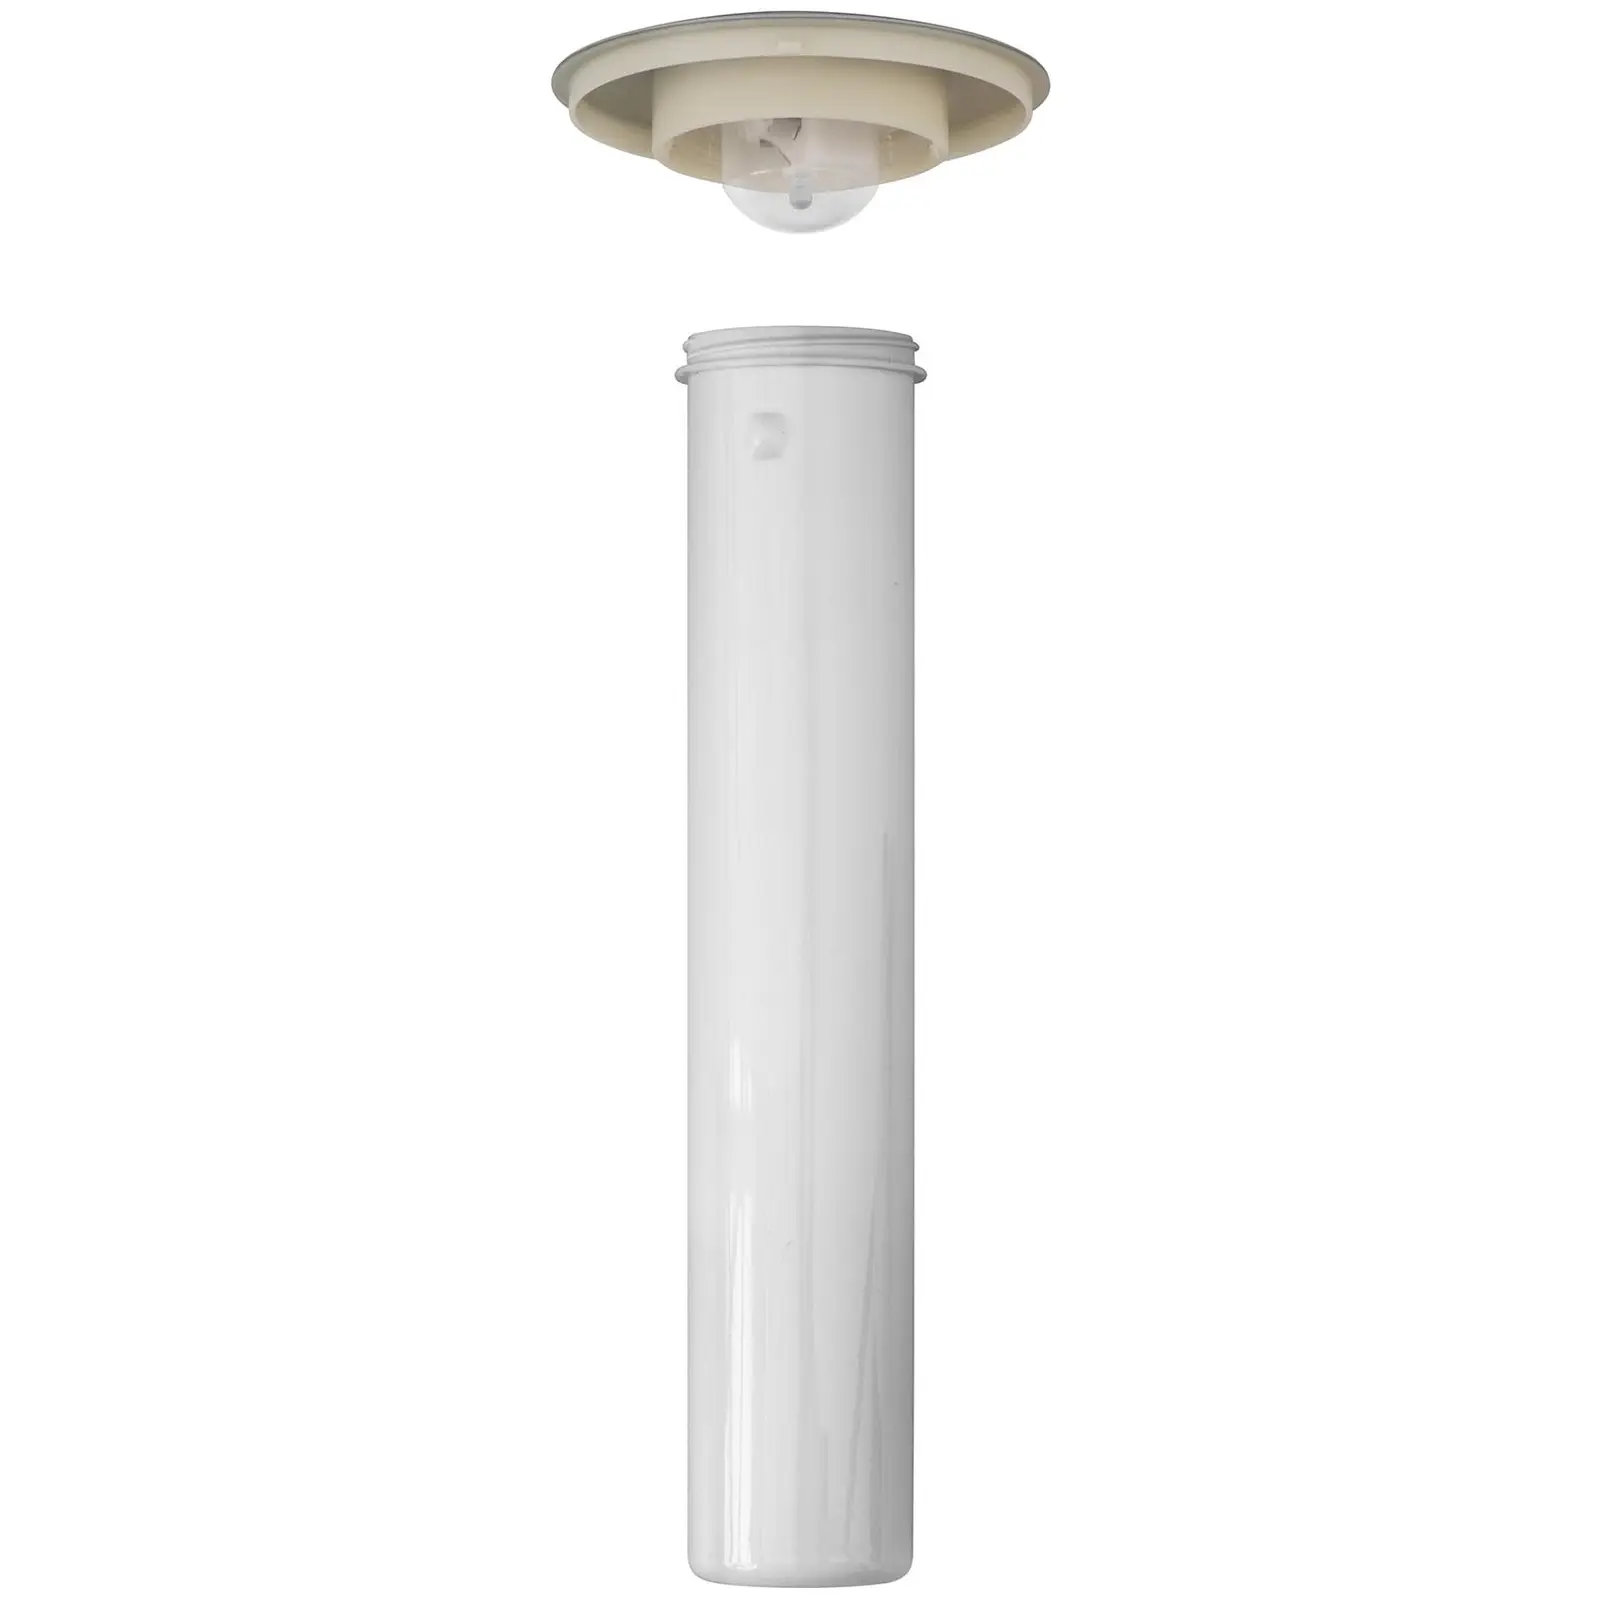 Dispensador de bebidas frías - 3 L - sistema de enfriamiento - para vasos hasta 198 mm - iluminación LED - plateado - Royal Catering